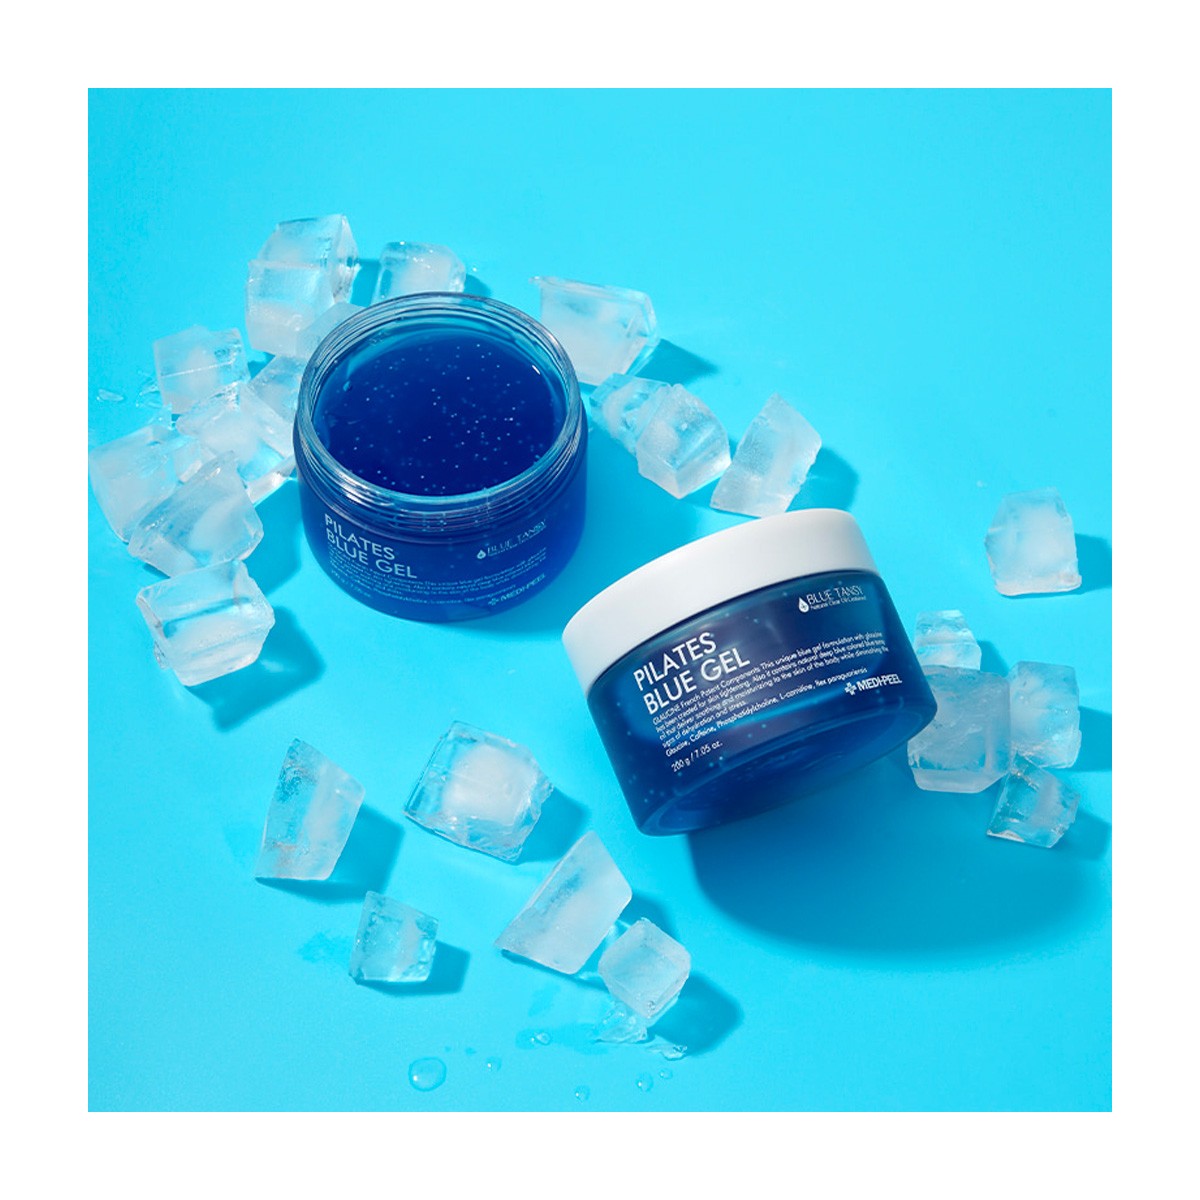 Corporal al mejor precio: Crema Anticelulítica Medi-Peel Pilates Blue Gel de Medi-peel en Skin Thinks - Tratamiento Anti-Edad